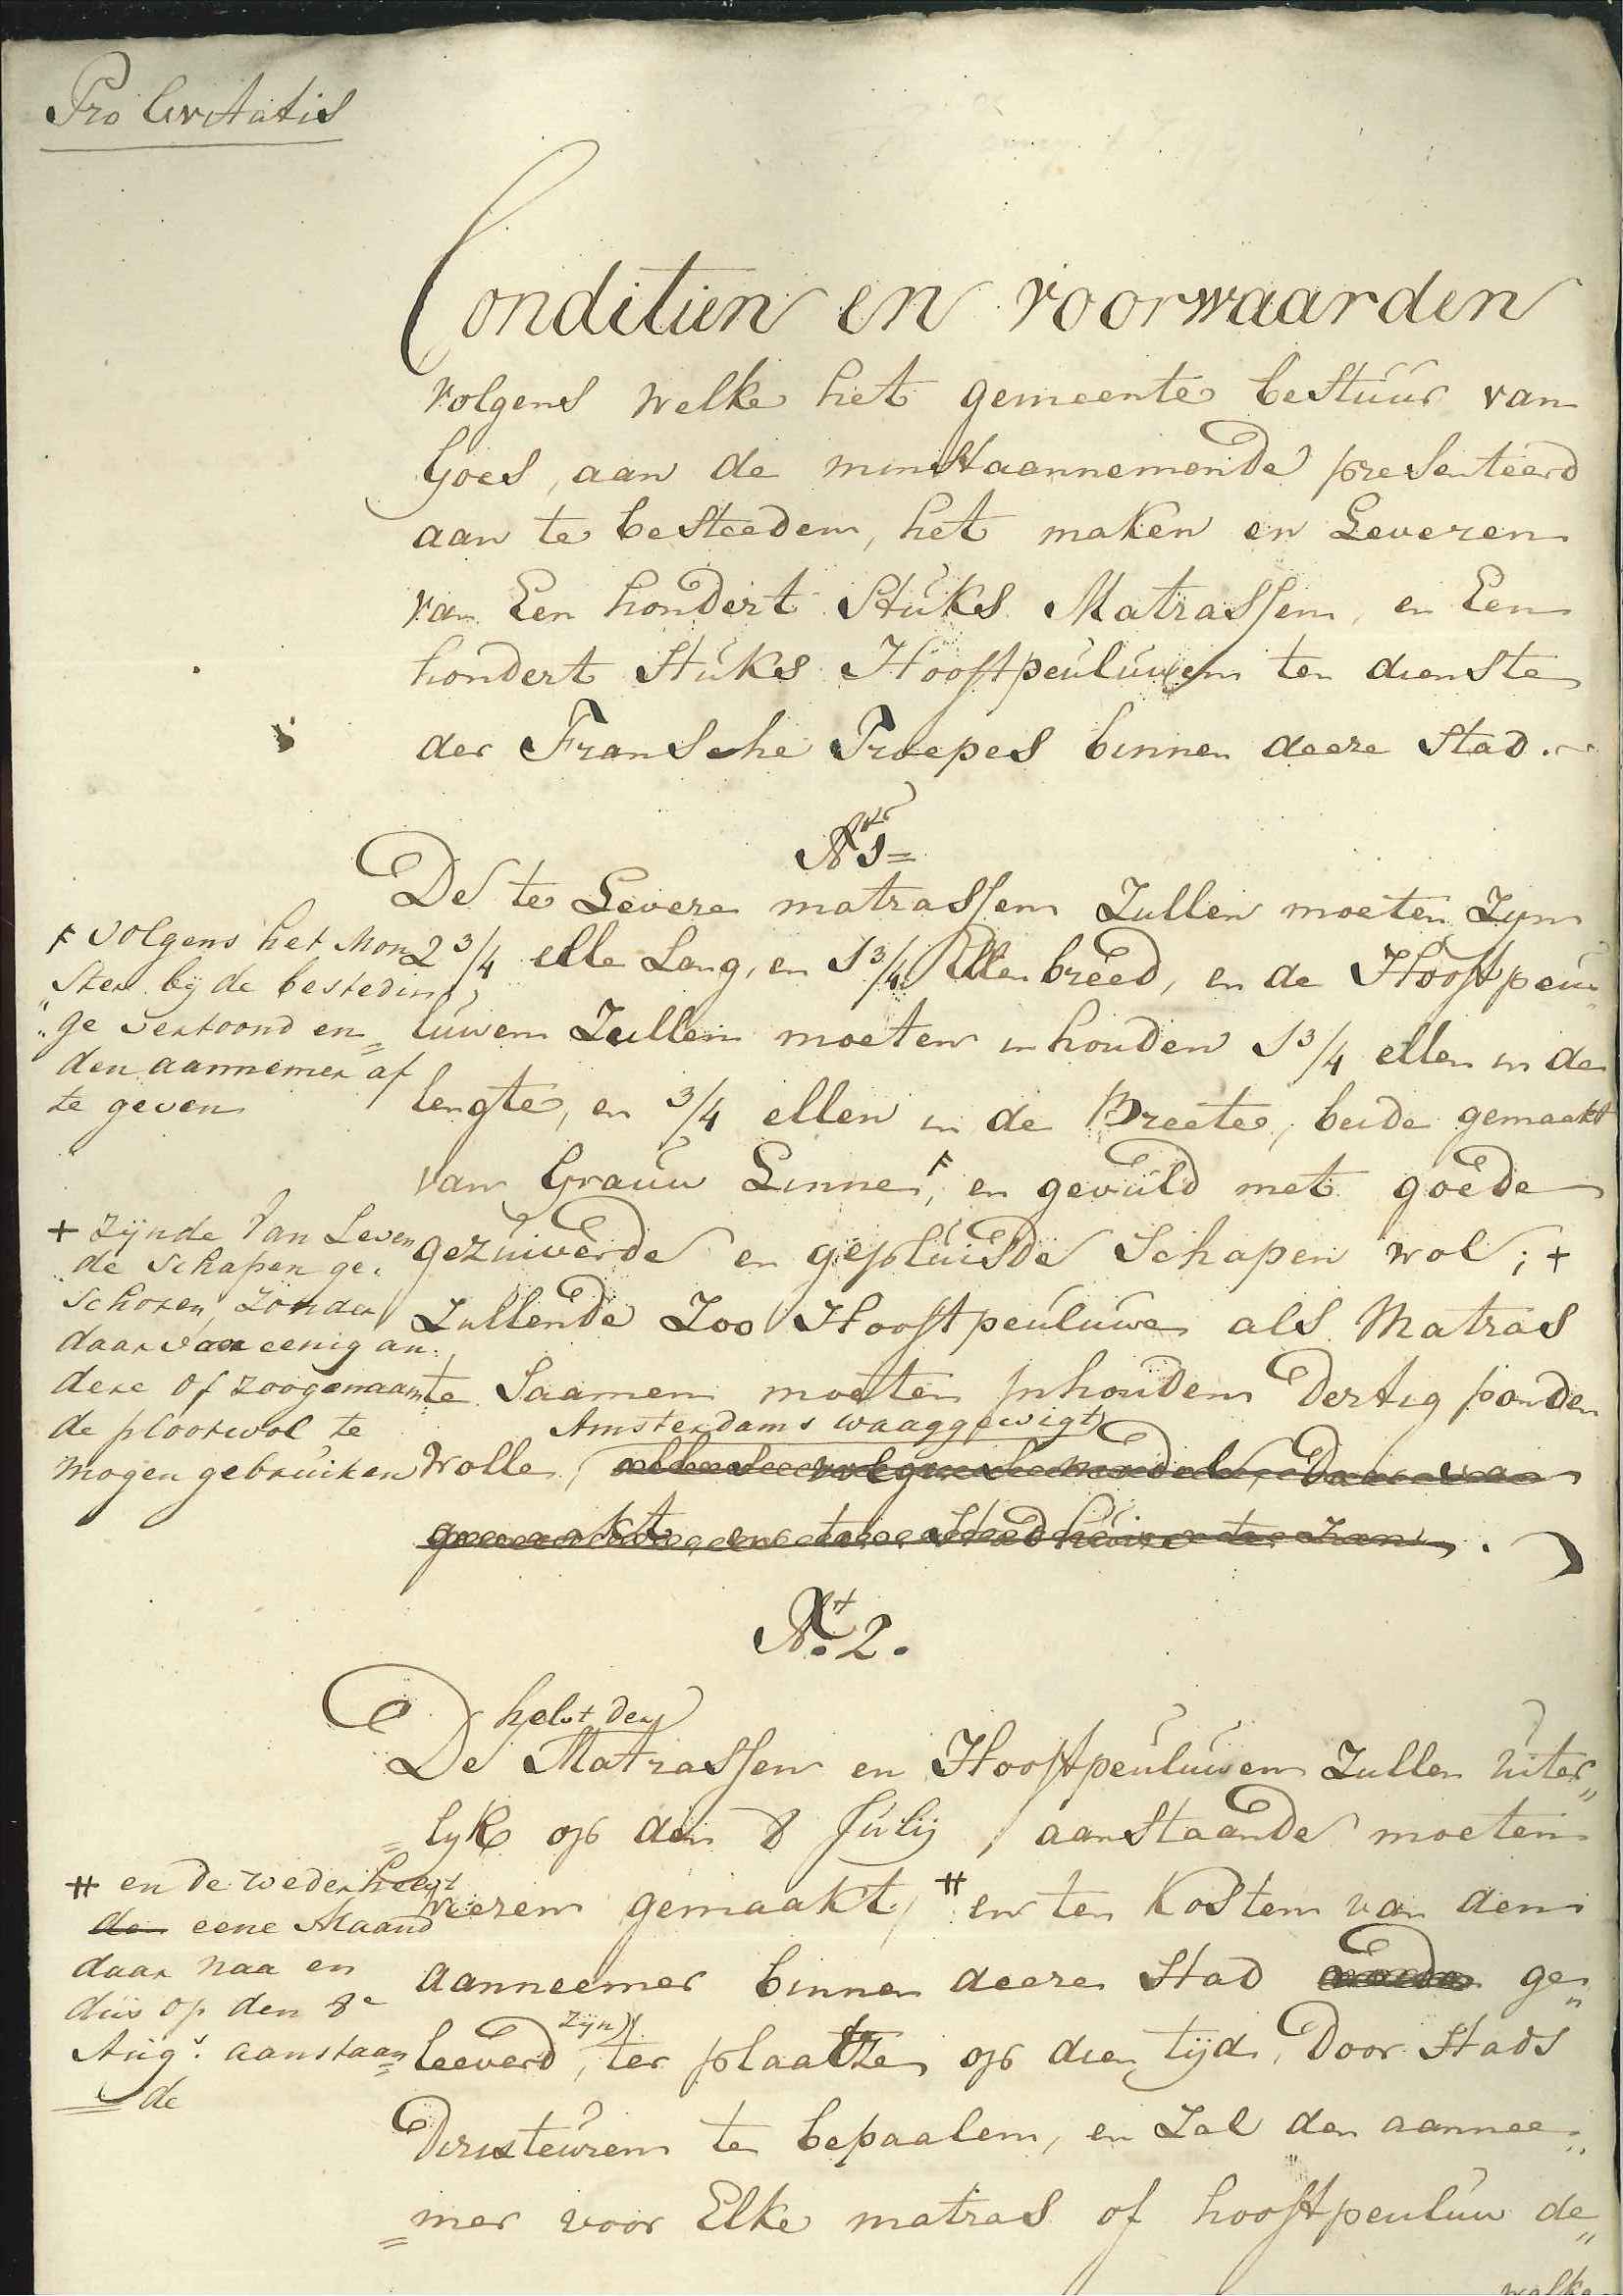 Bestek voor de levering van 100 matrassen en hoofdkussens, 1810.